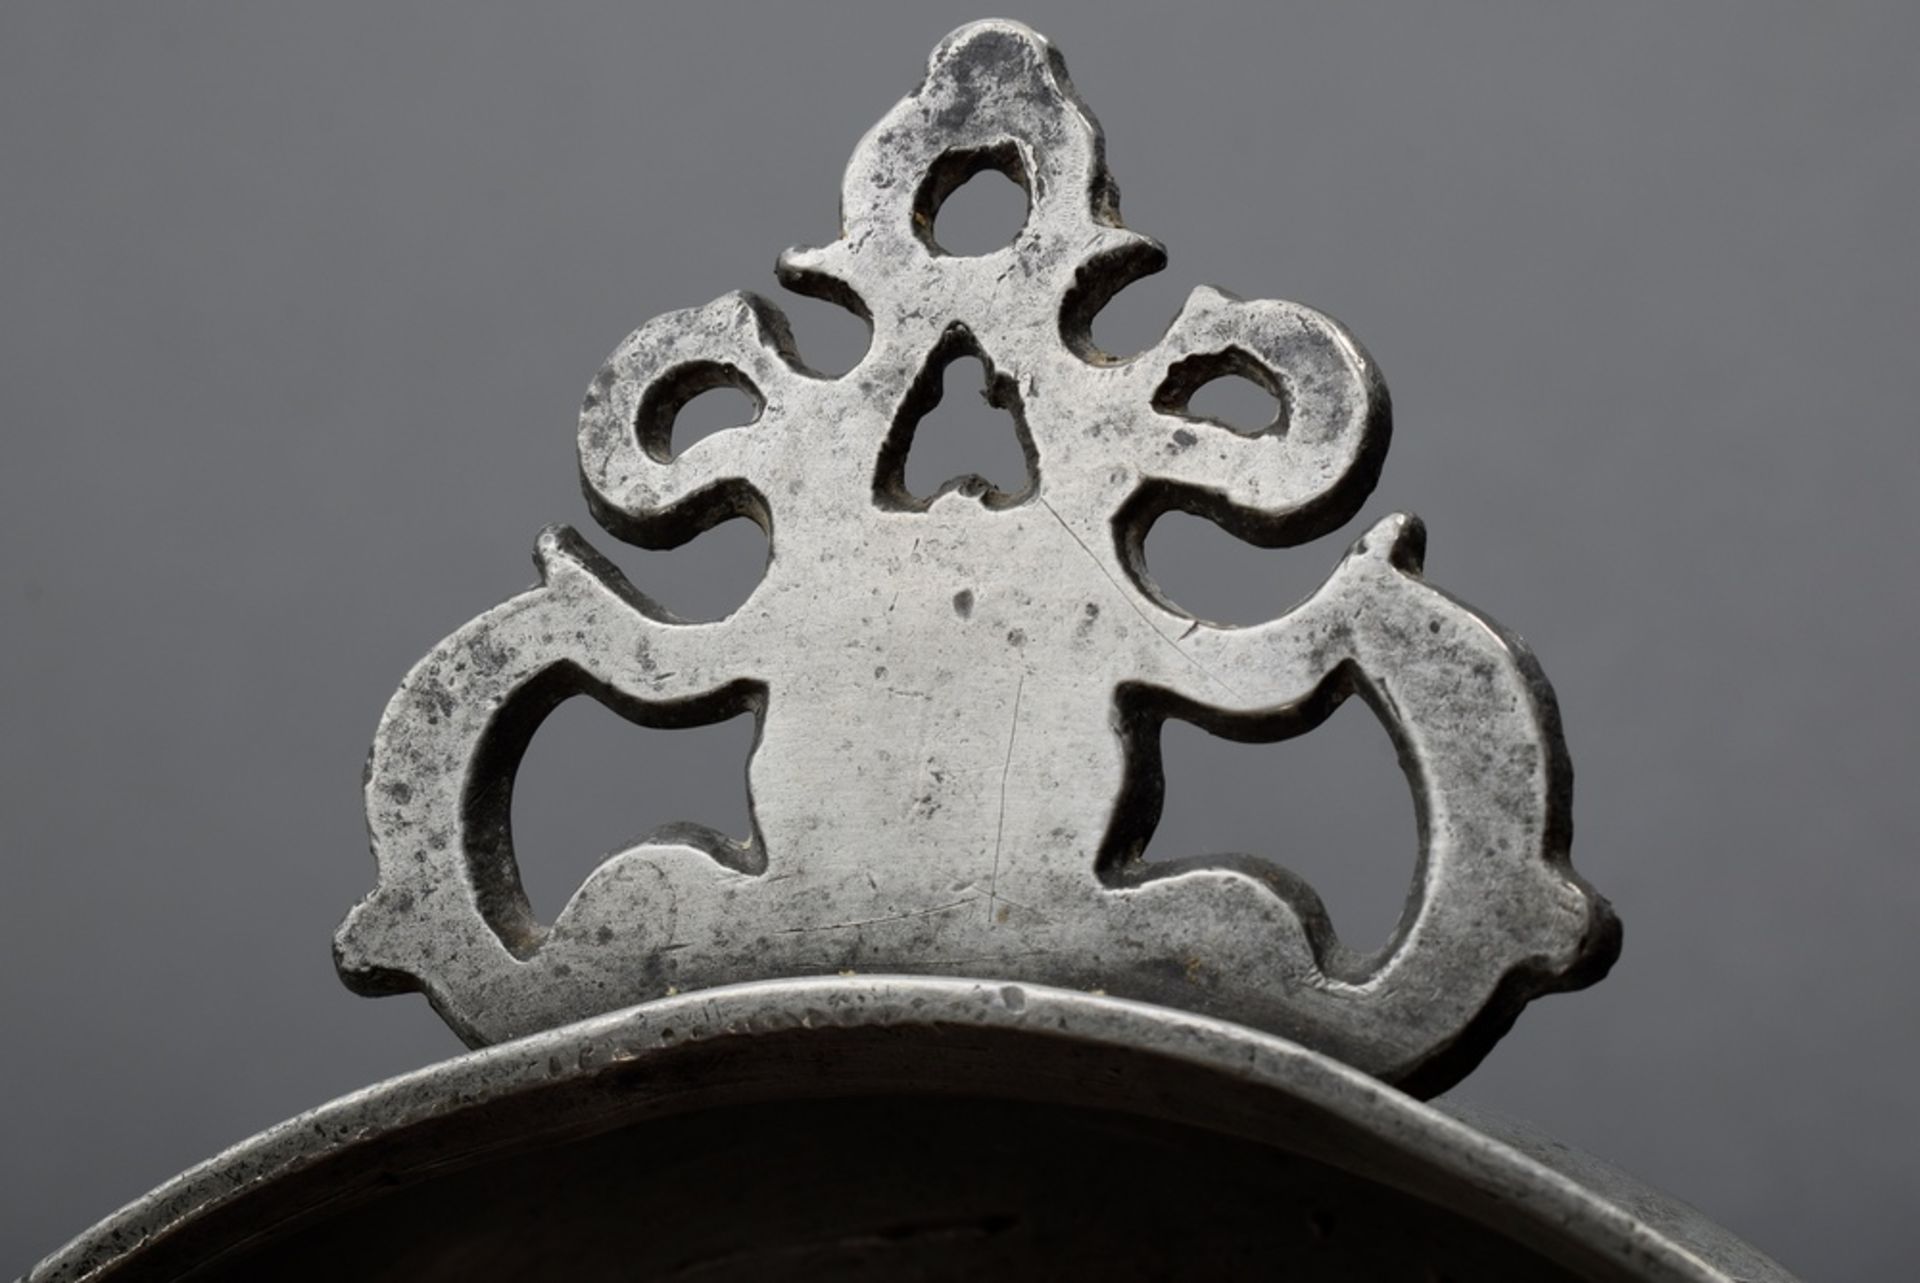 2 Diverse Zinn Ohrenschalen mit ornamentalen Henkeln und Monogrammgravuren "J.K.F 1825" und "MGGB", - Bild 5 aus 6